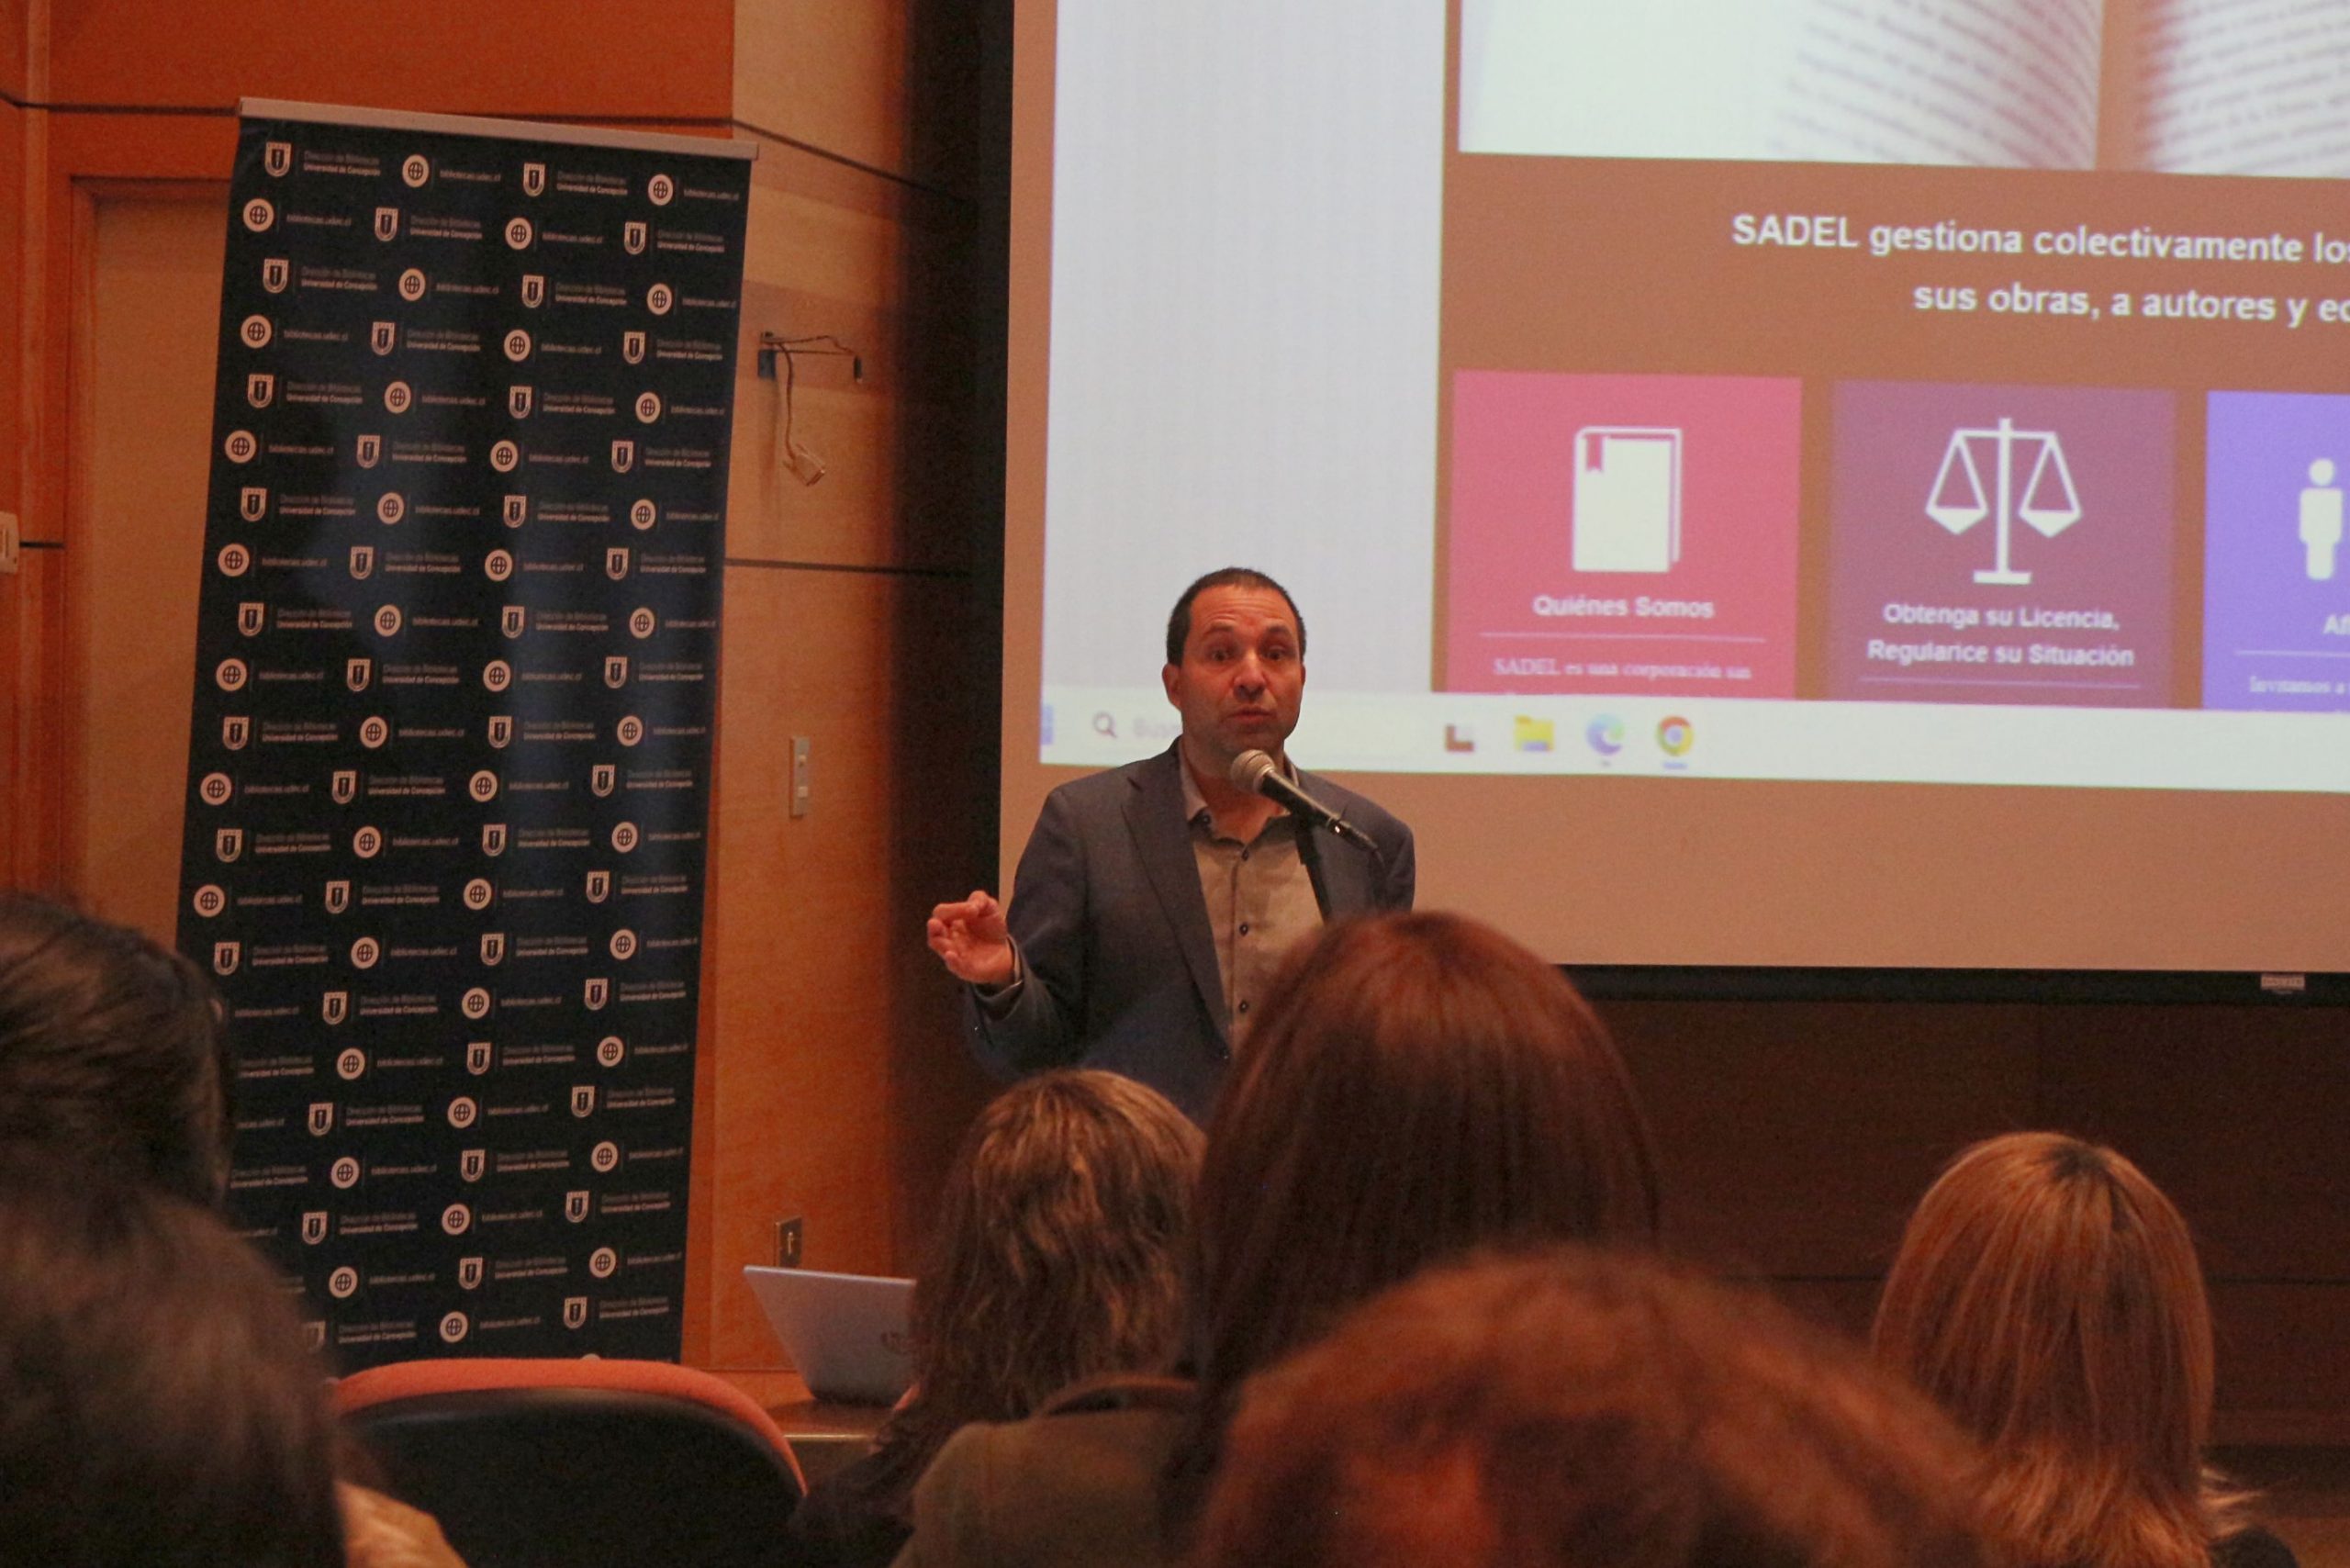 El Director de la Sociedad del Derecho de Autor, Cristian Elgueta, habla en un micrófono ubicado delante de una pantalla donde se proyecta un Power Point.